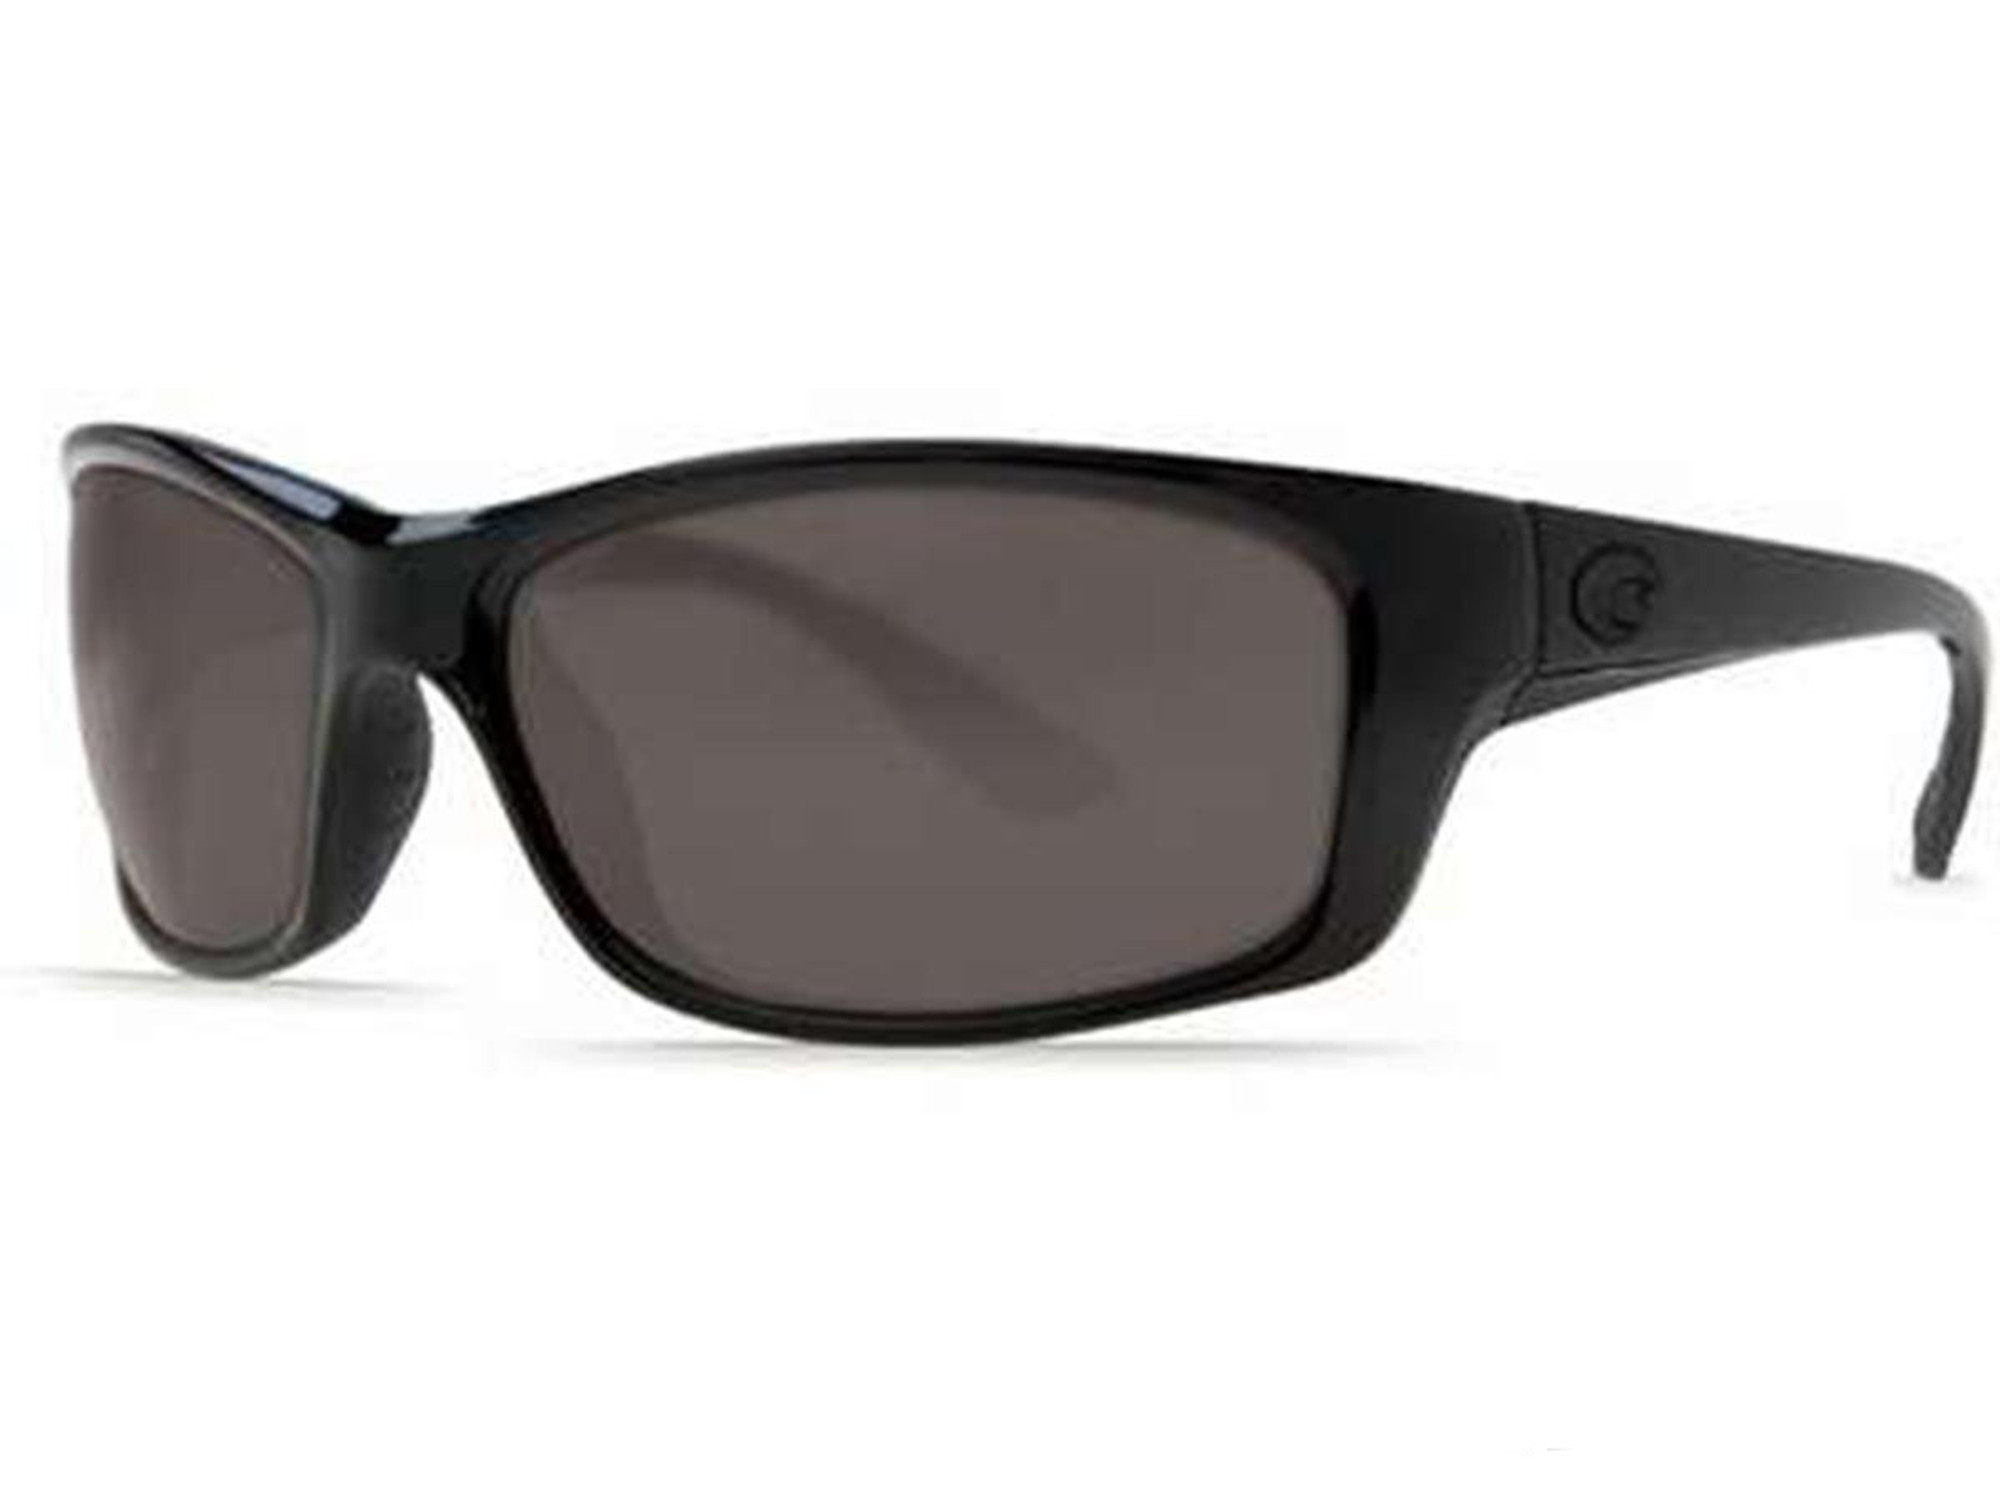 Costa Del Mar - Jose Polarized Sunglasses - Blackout / 580p Gray